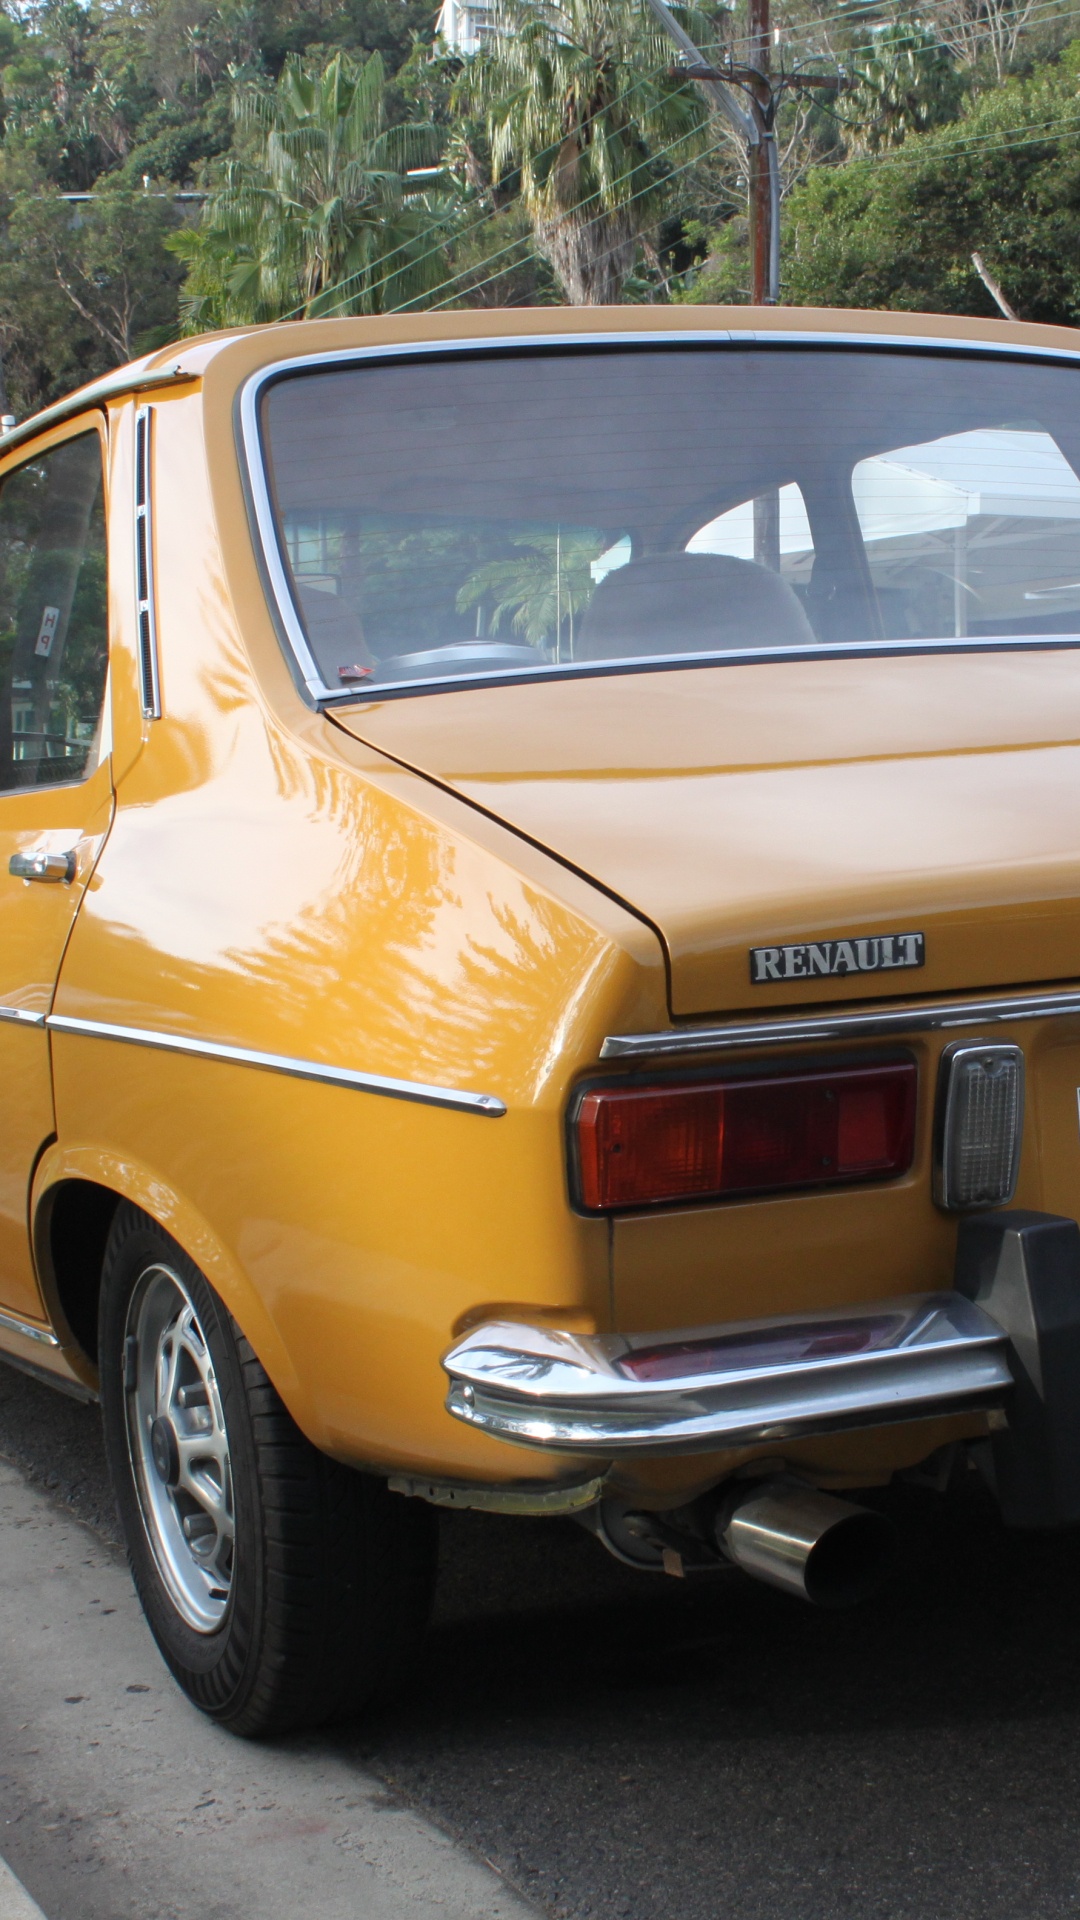 Gelbe Limousine am Straßenrand Geparkt. Wallpaper in 1080x1920 Resolution